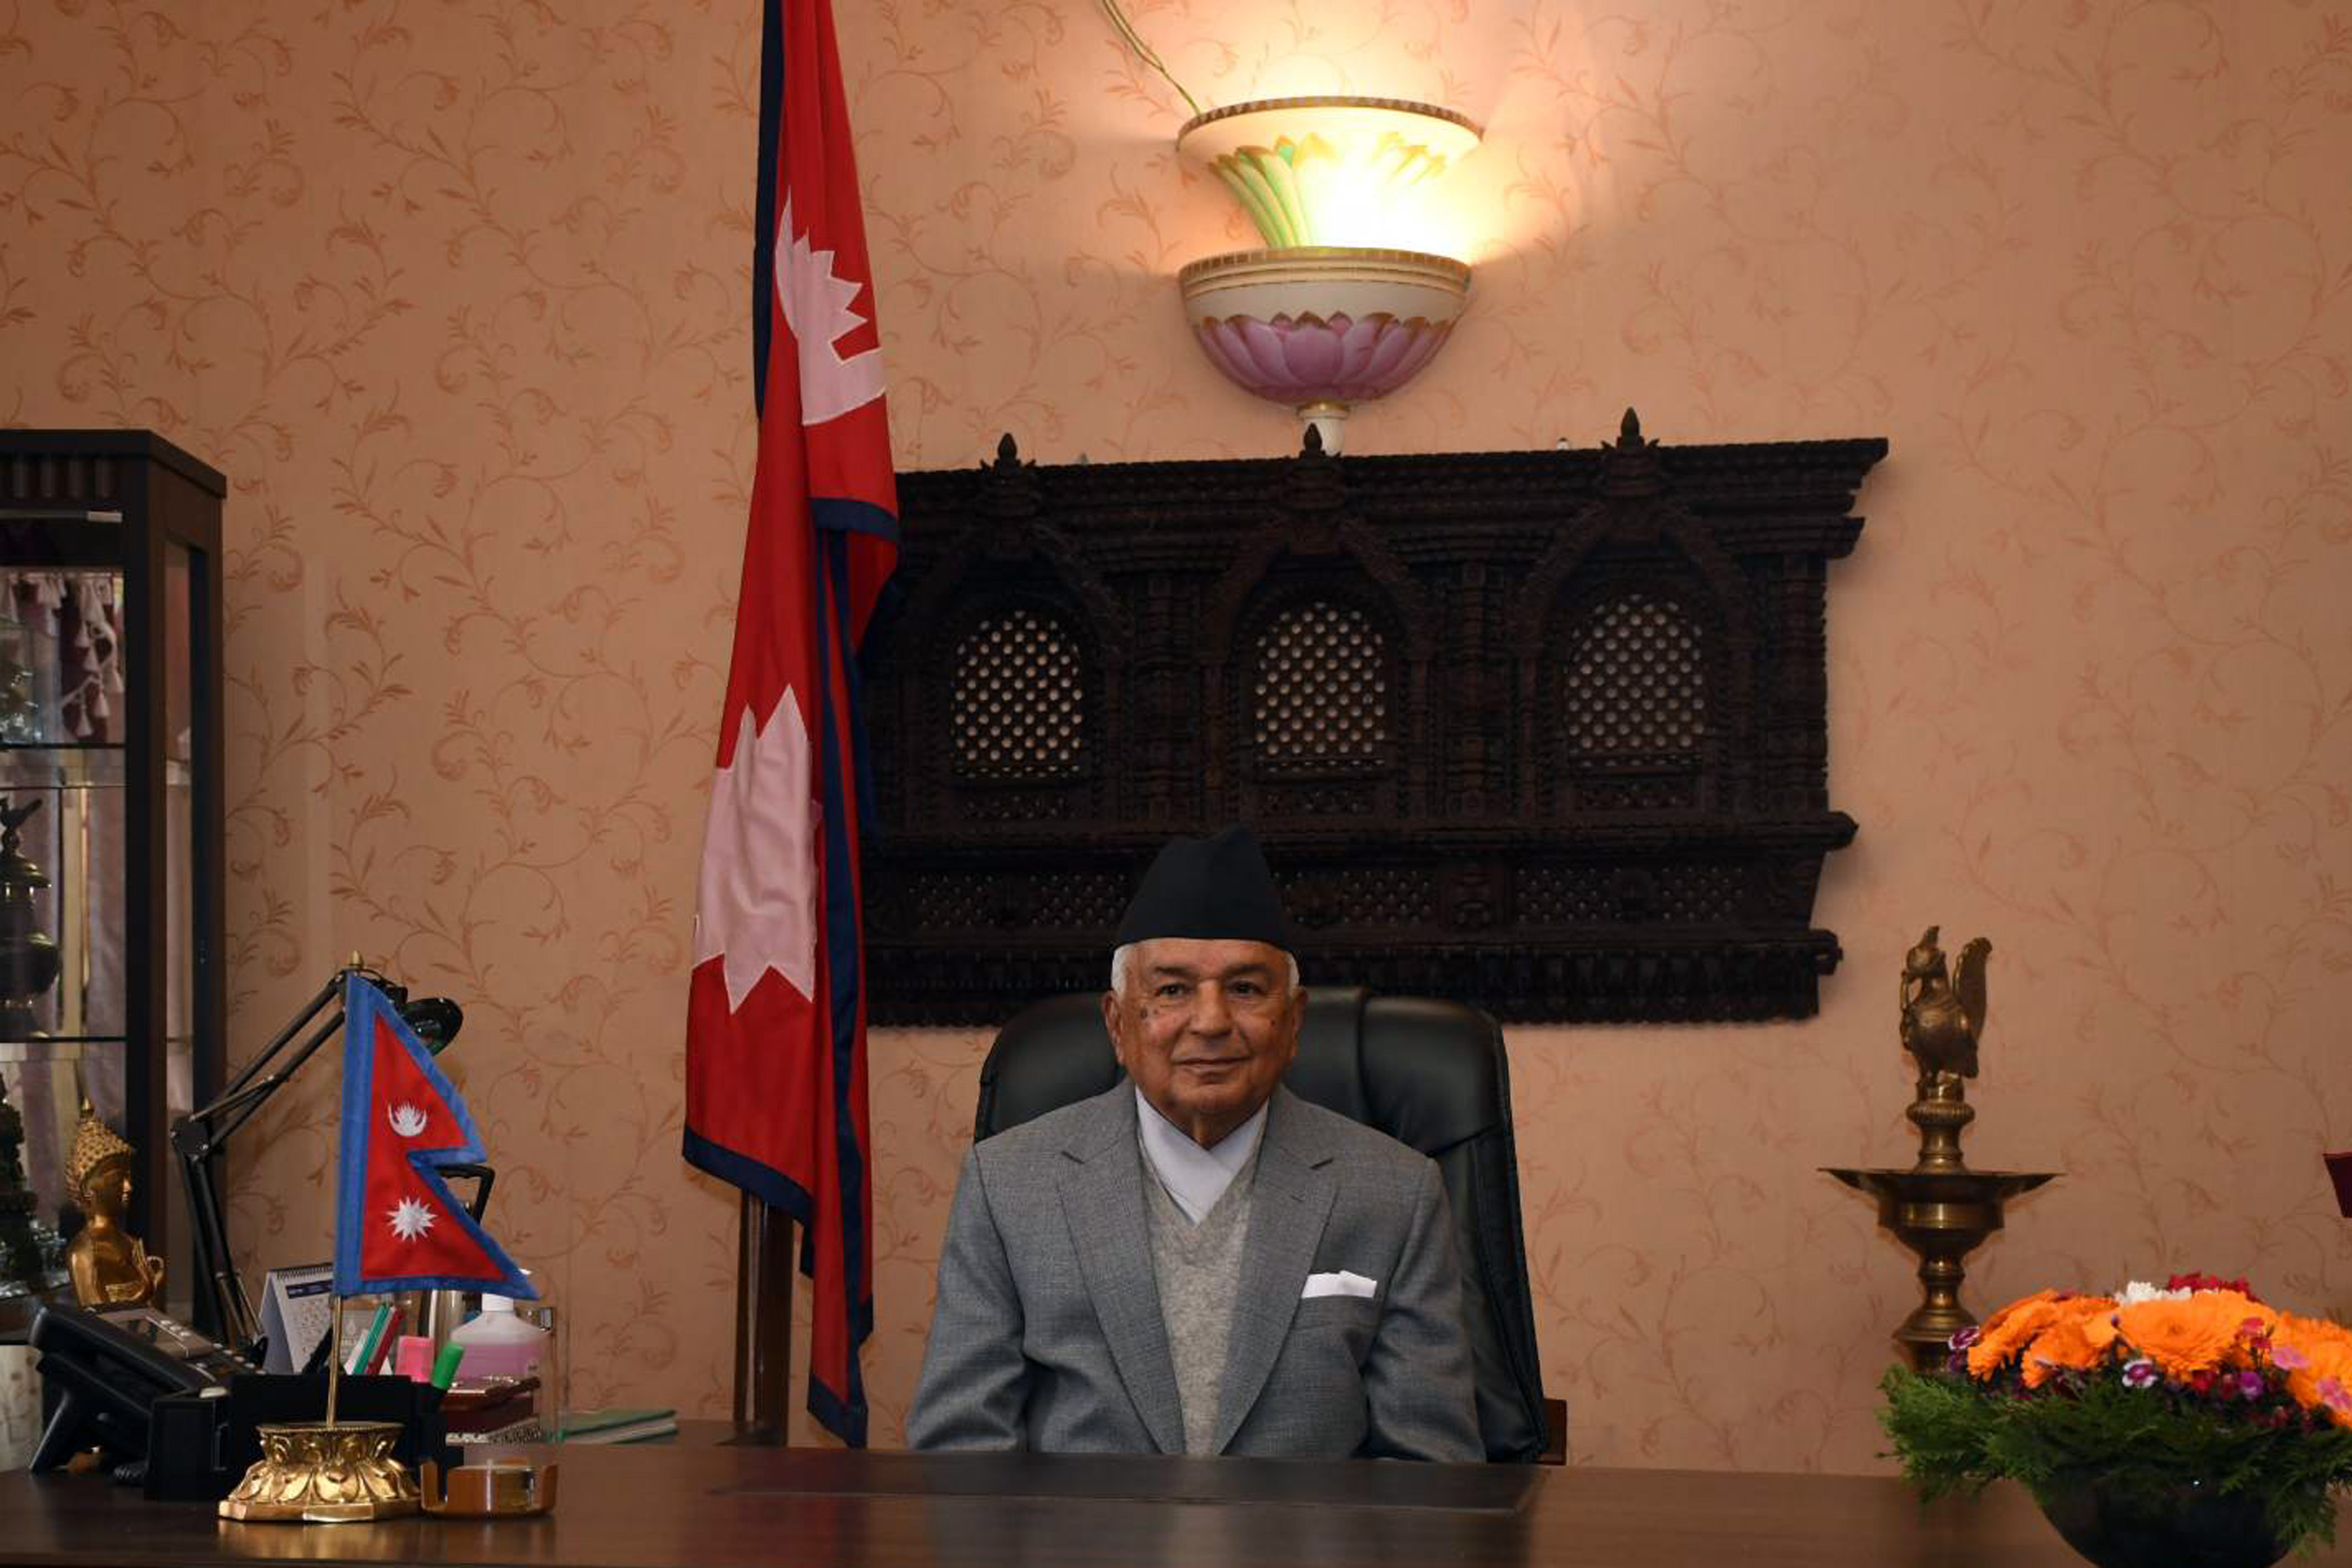 President extends Bada Dashain best wishes